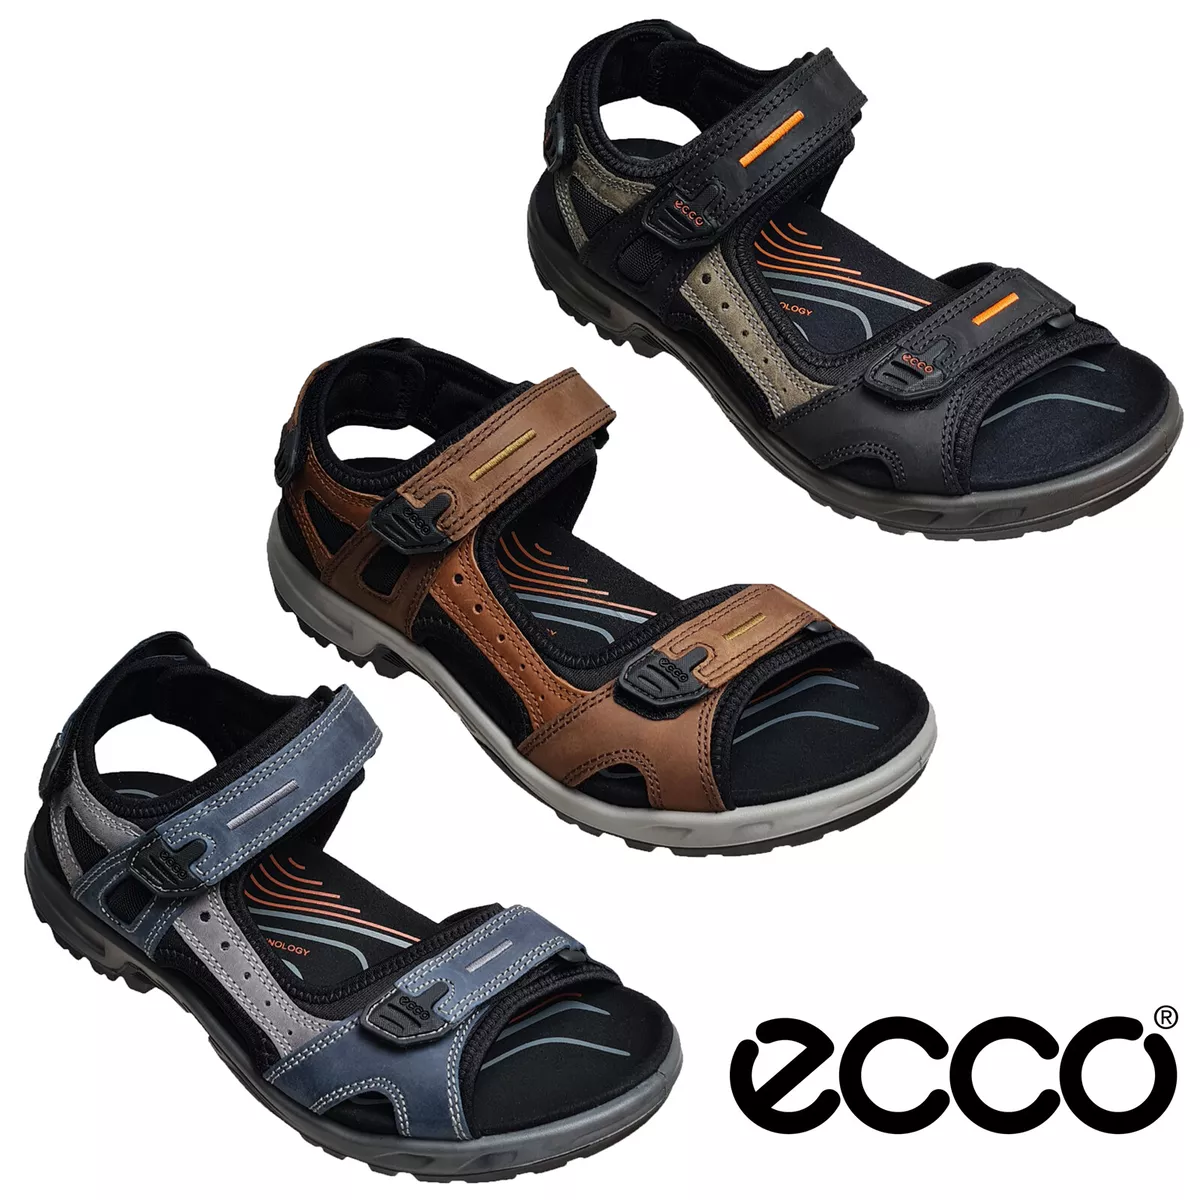 ECCO Hombre Caminar Sandalias Offroad Verano Open Toe Zapatos de Correa  UK8-11.5